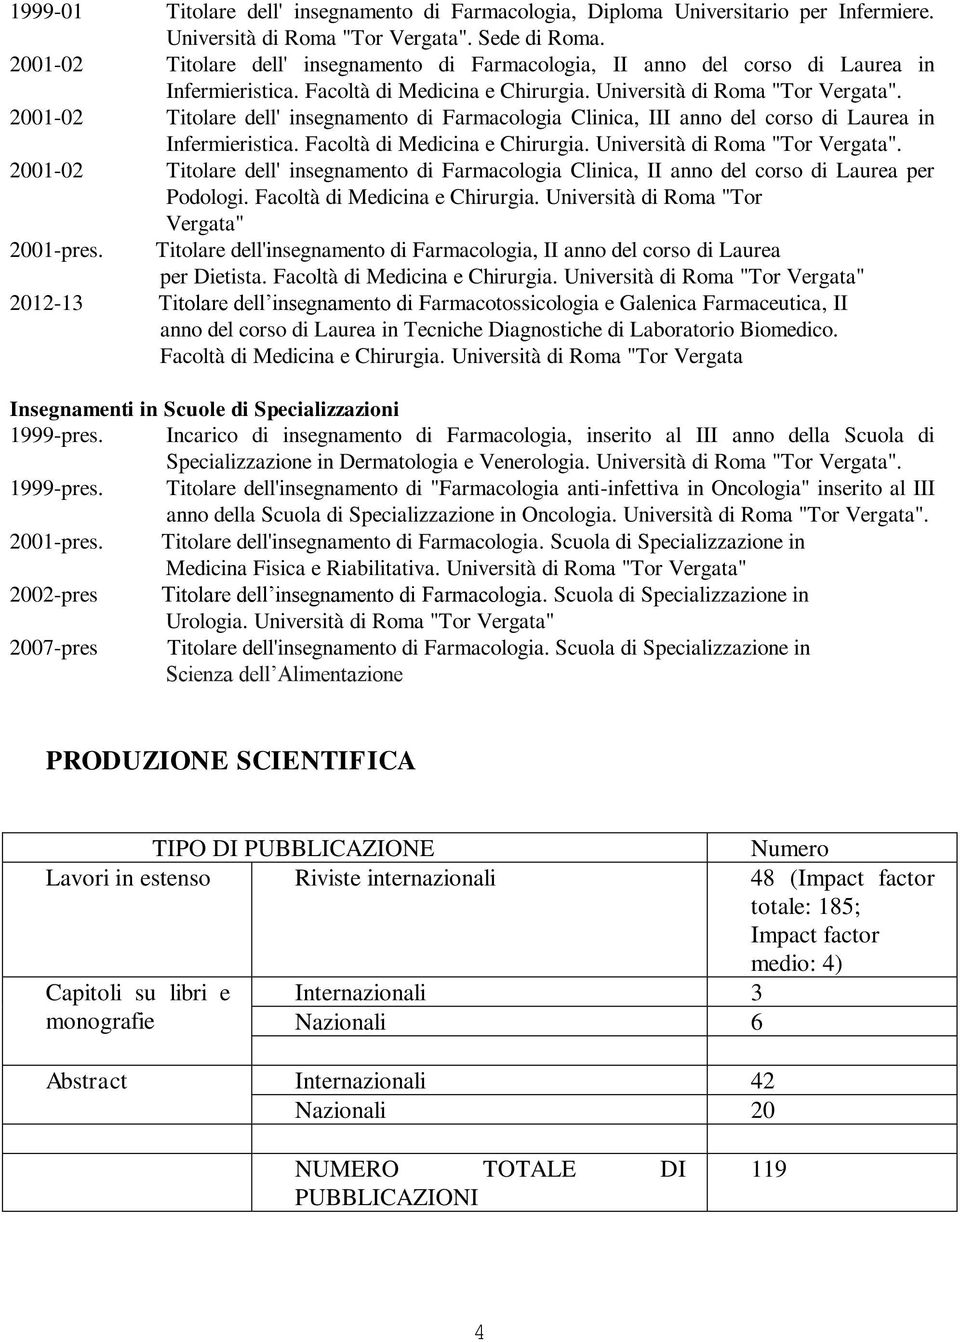 2001-02 Titolare dell' insegnamento di Farmacologia Clinica, III anno del corso di Laurea in Infermieristica. Facoltà di Medicina e Chirurgia. Università di Roma "Tor Vergata".